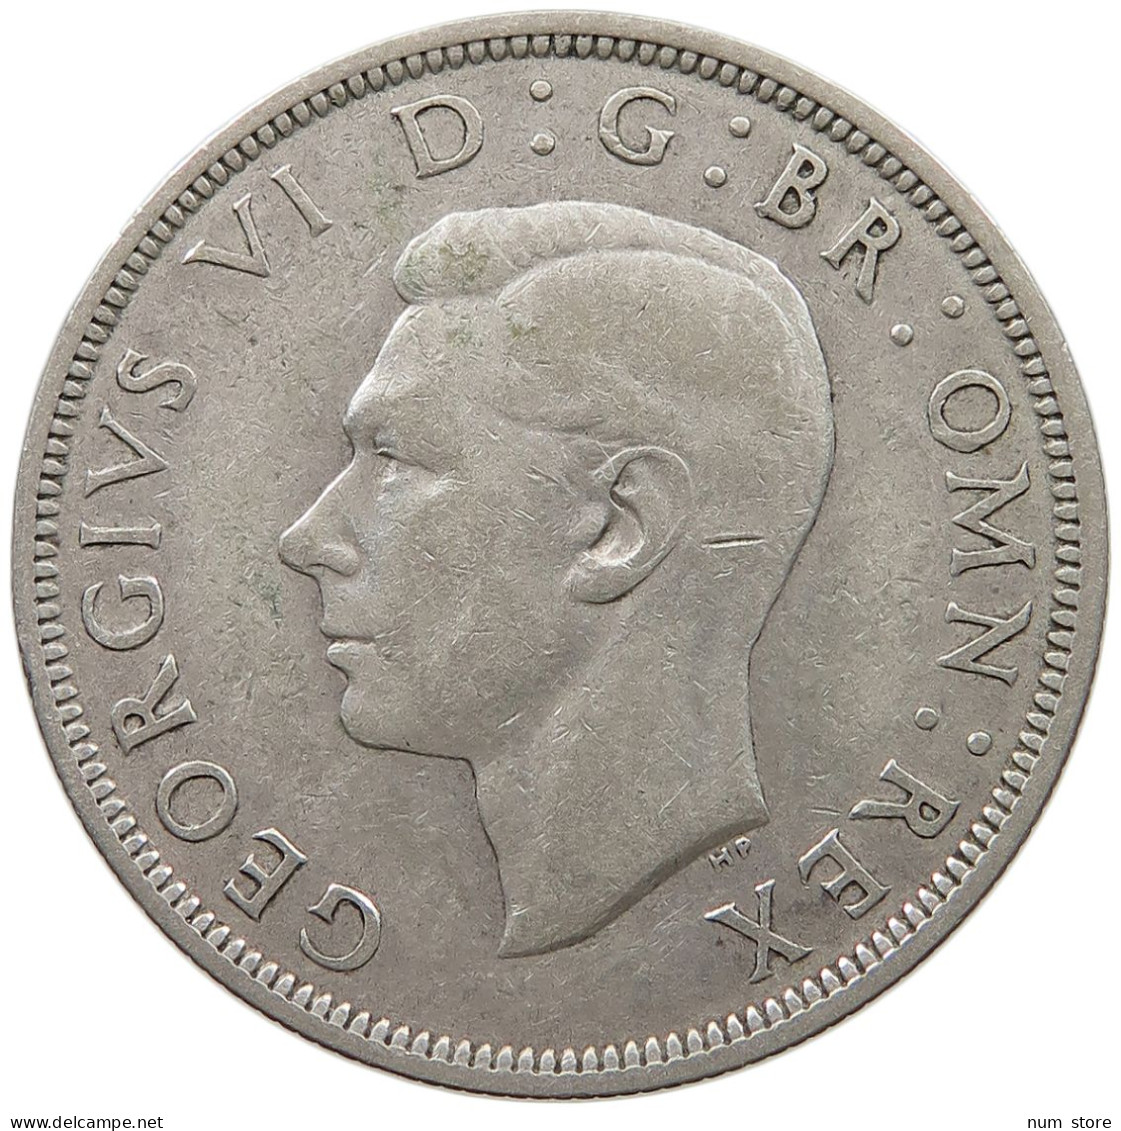 GREAT BRITAIN HALF CROWN 1940 George VI. (1936-1952) #s060 0797 - K. 1/2 Crown